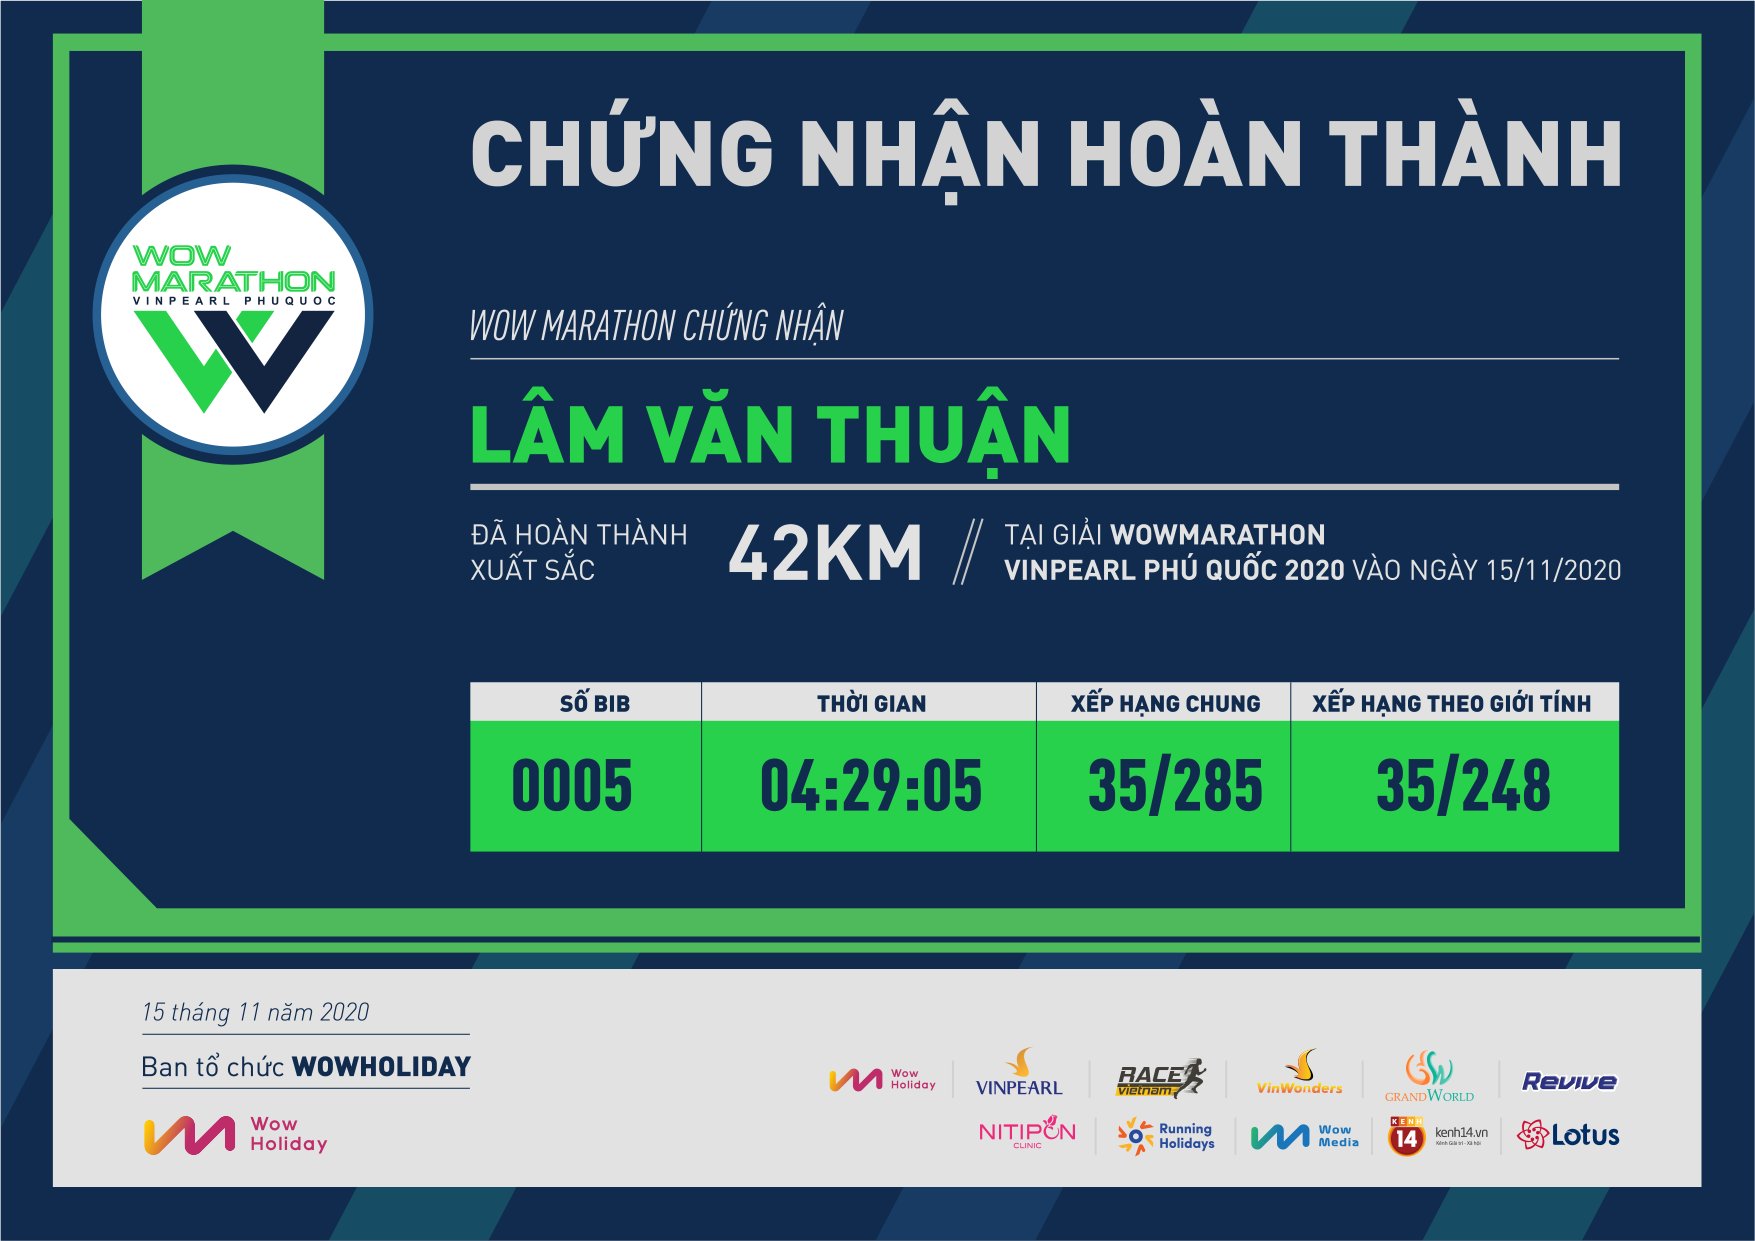 0005 - Lâm Văn Thuận